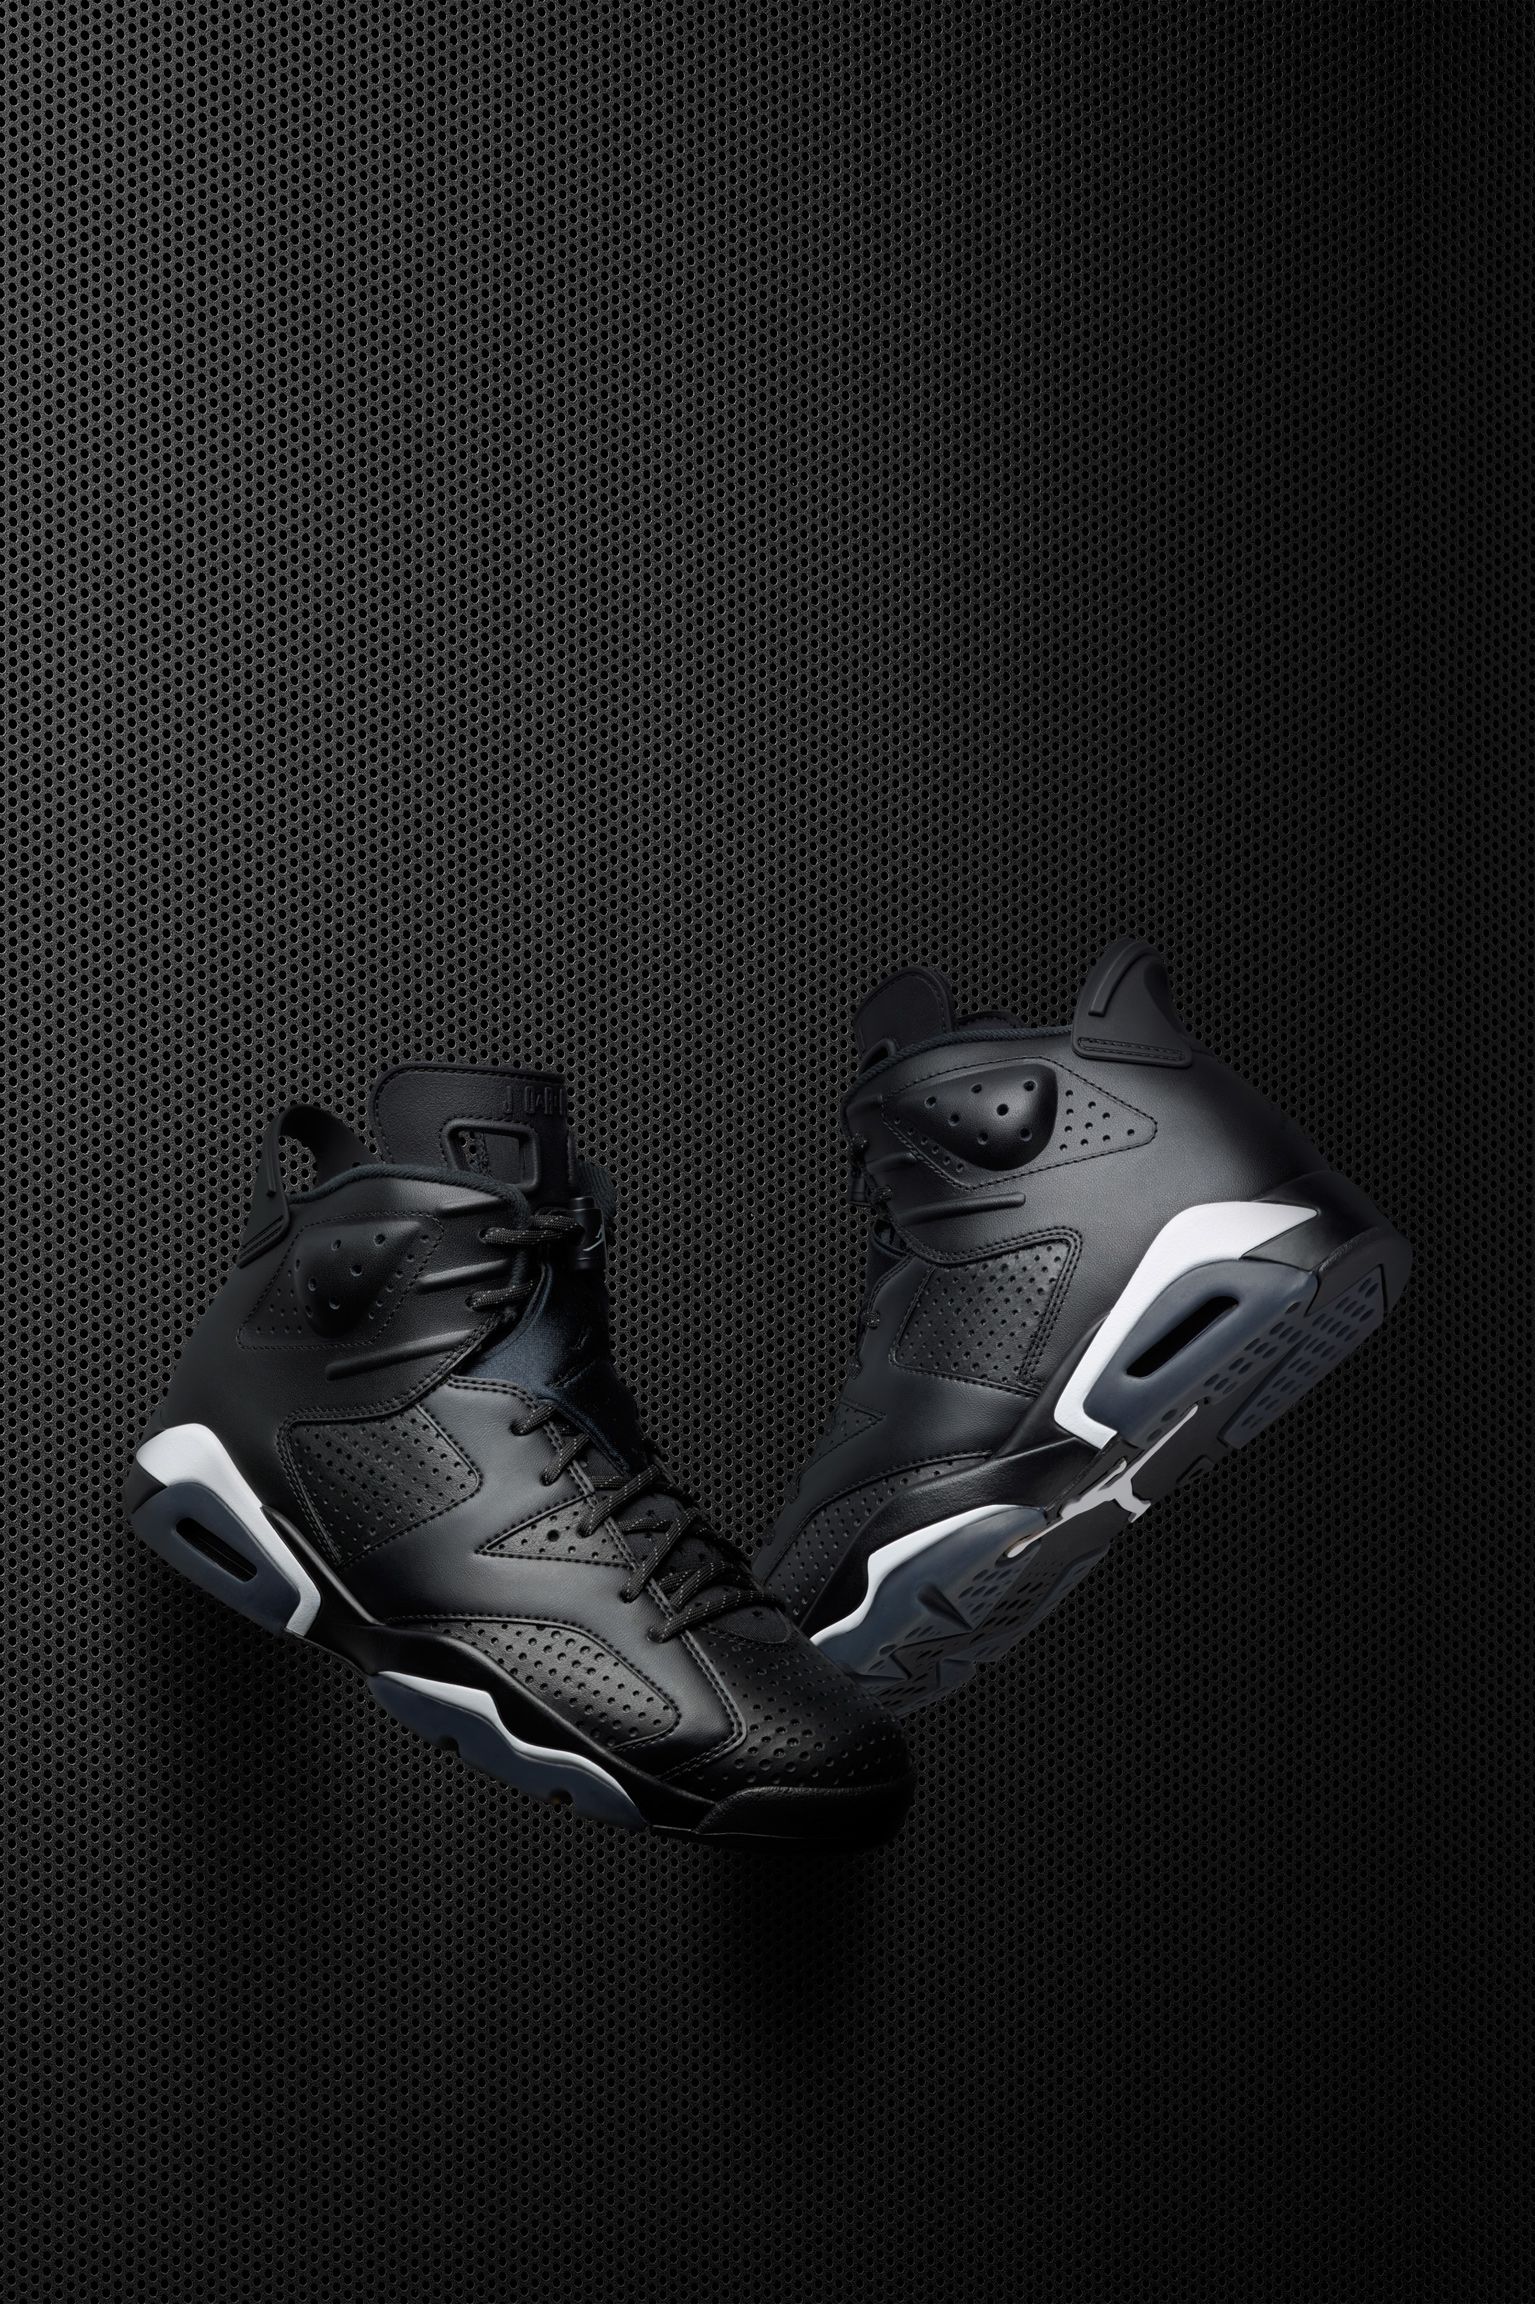 microscópico Microordenador Ardiente Air Jordan 6 Retro "Black". Nike SNKRS ES